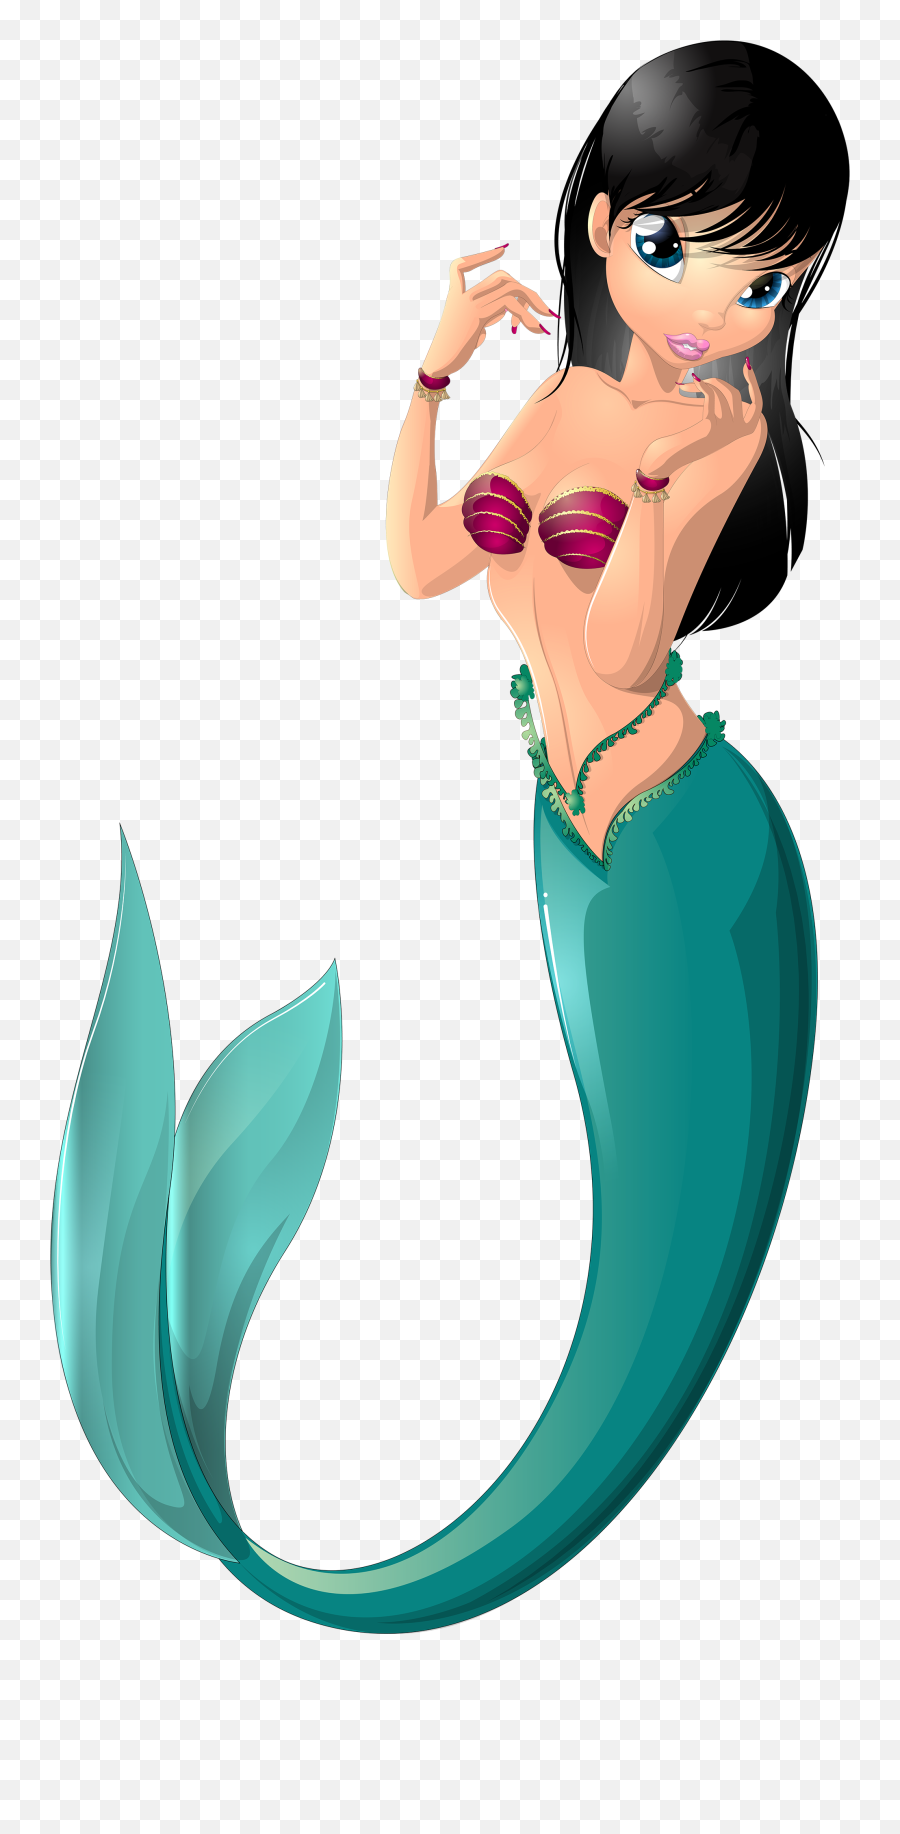 Mermaid Silhouette Clipart - Imágenes De Sirenas En Caricatura Emoji,Mermaid Emoji